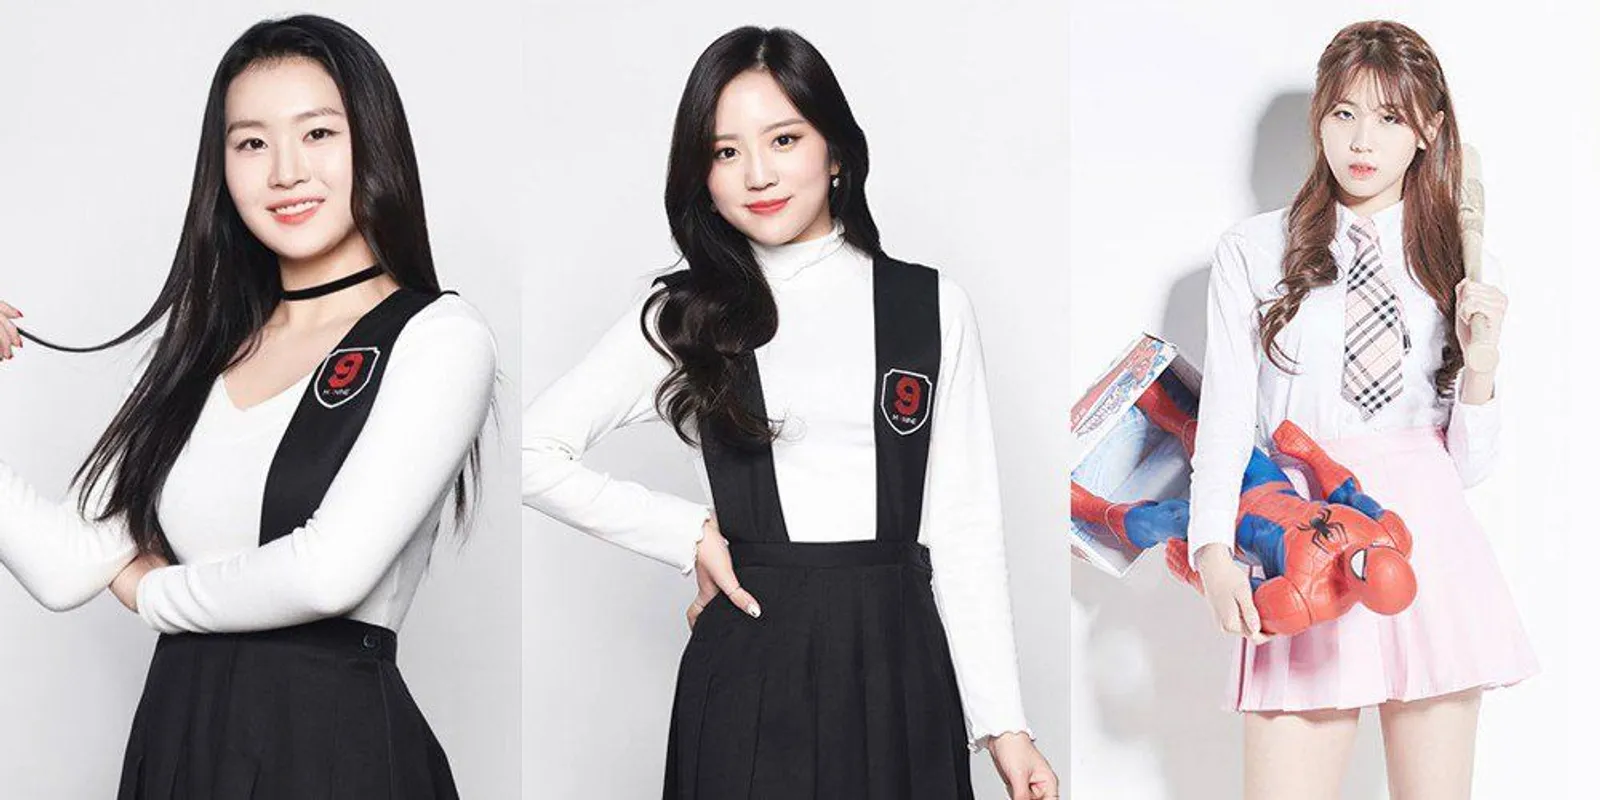 Siap-Siap, Ini Dia 5 Kpop Idols yang Akan 'Comeback' di November Ini